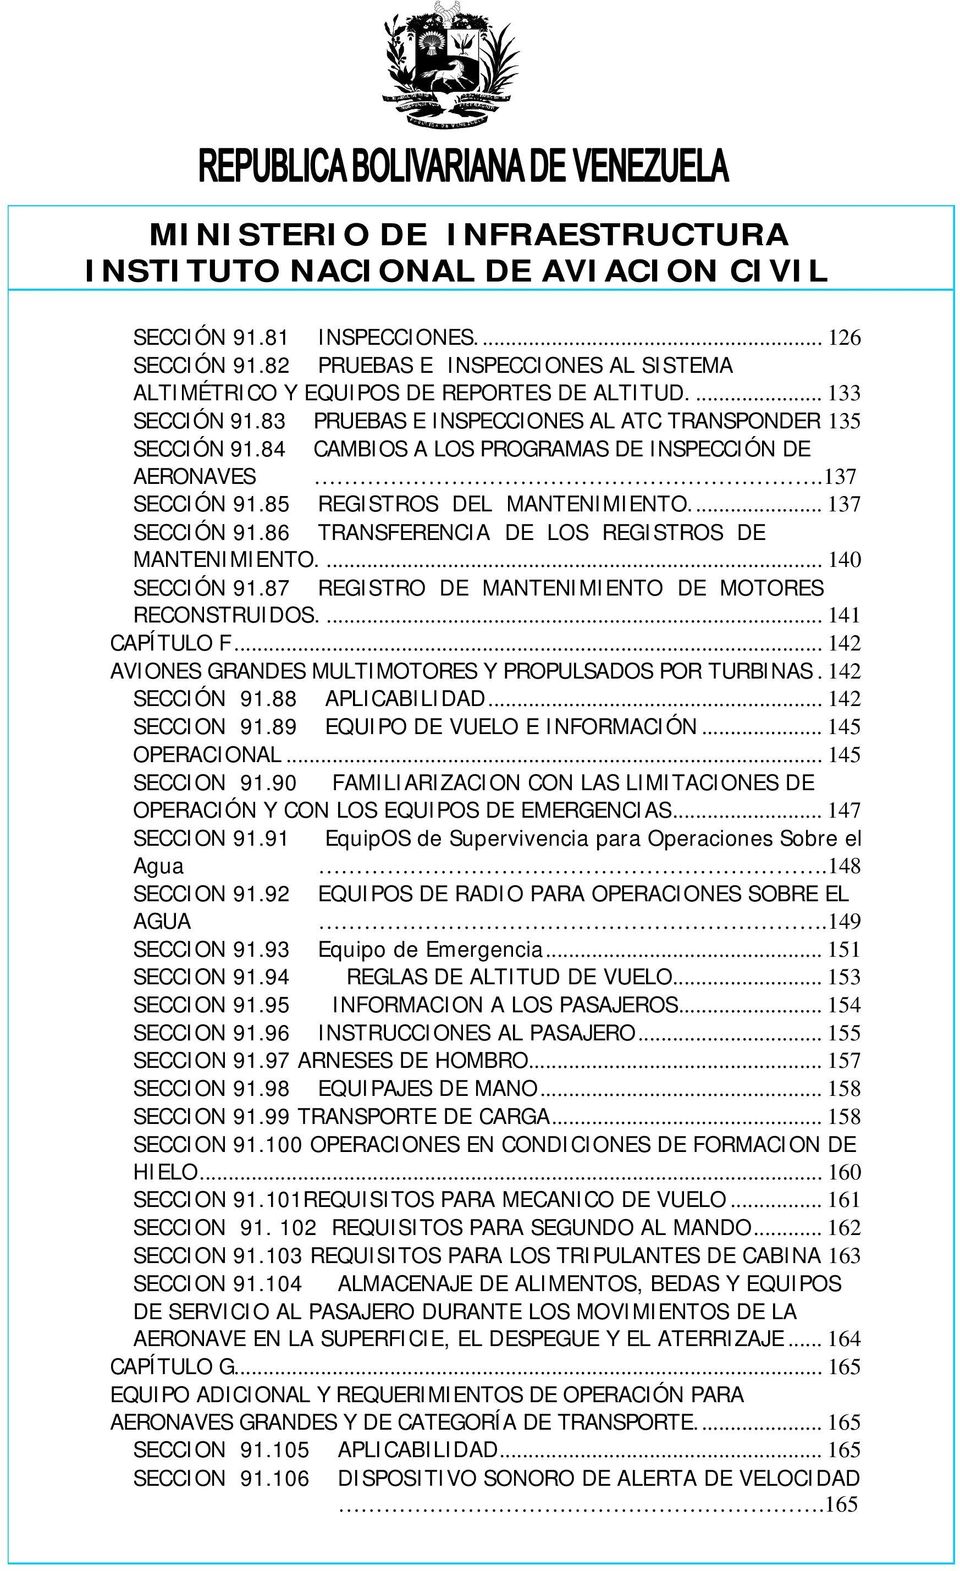 86 TRANSFERENCIA DE LOS REGISTROS DE MANTENIMIENTO.... 140 SECCIÓN 91.87 REGISTRO DE MANTENIMIENTO DE MOTORES RECONSTRUIDOS.... 141 CAPÍTULO F.